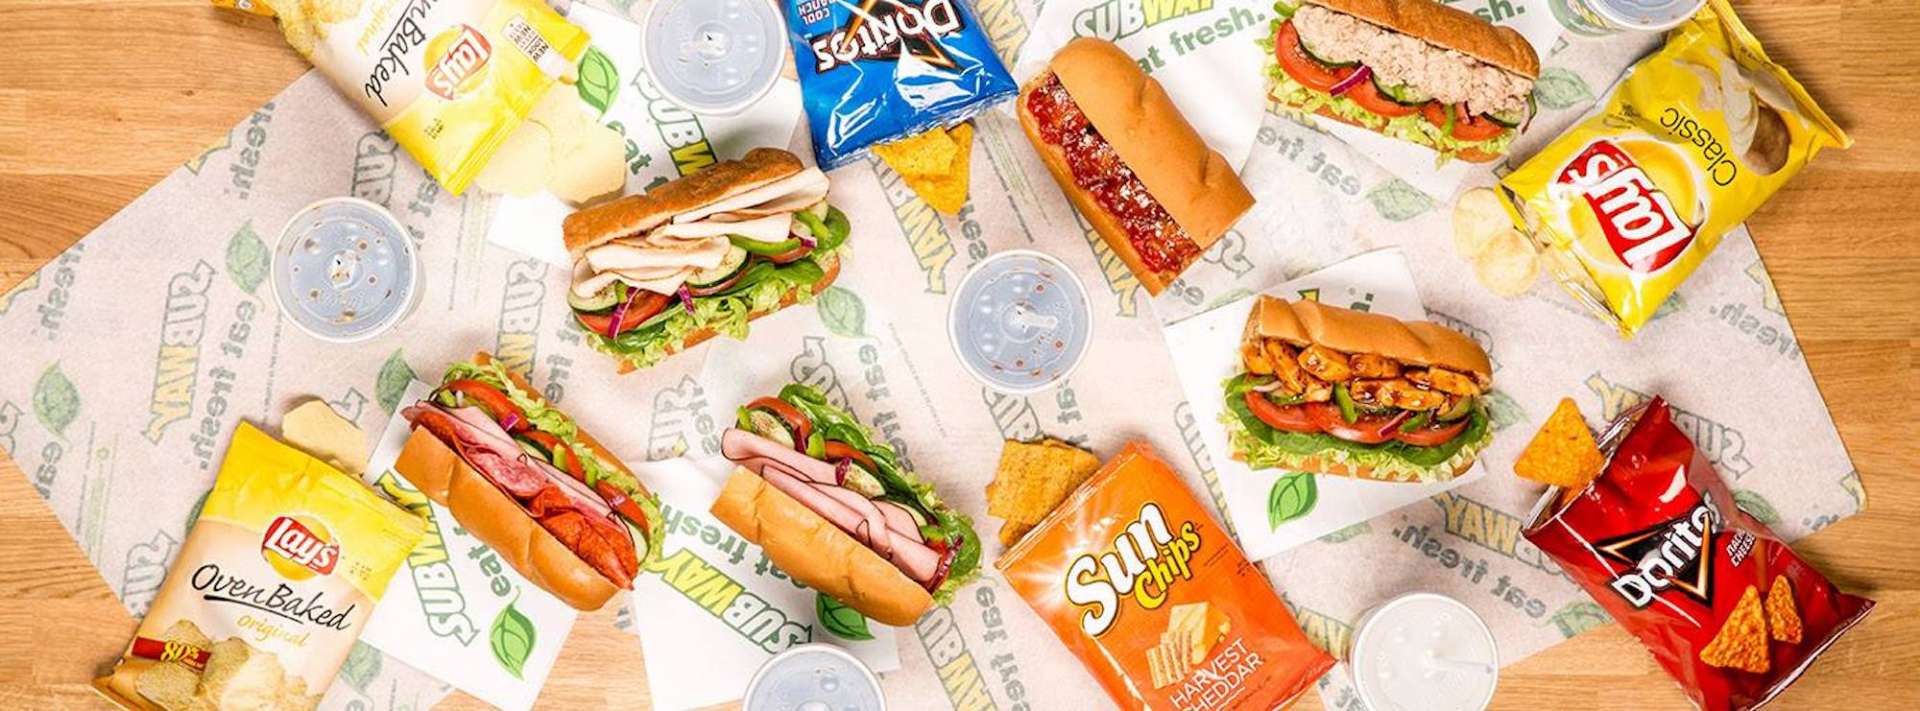 Best Subway Sandwiches